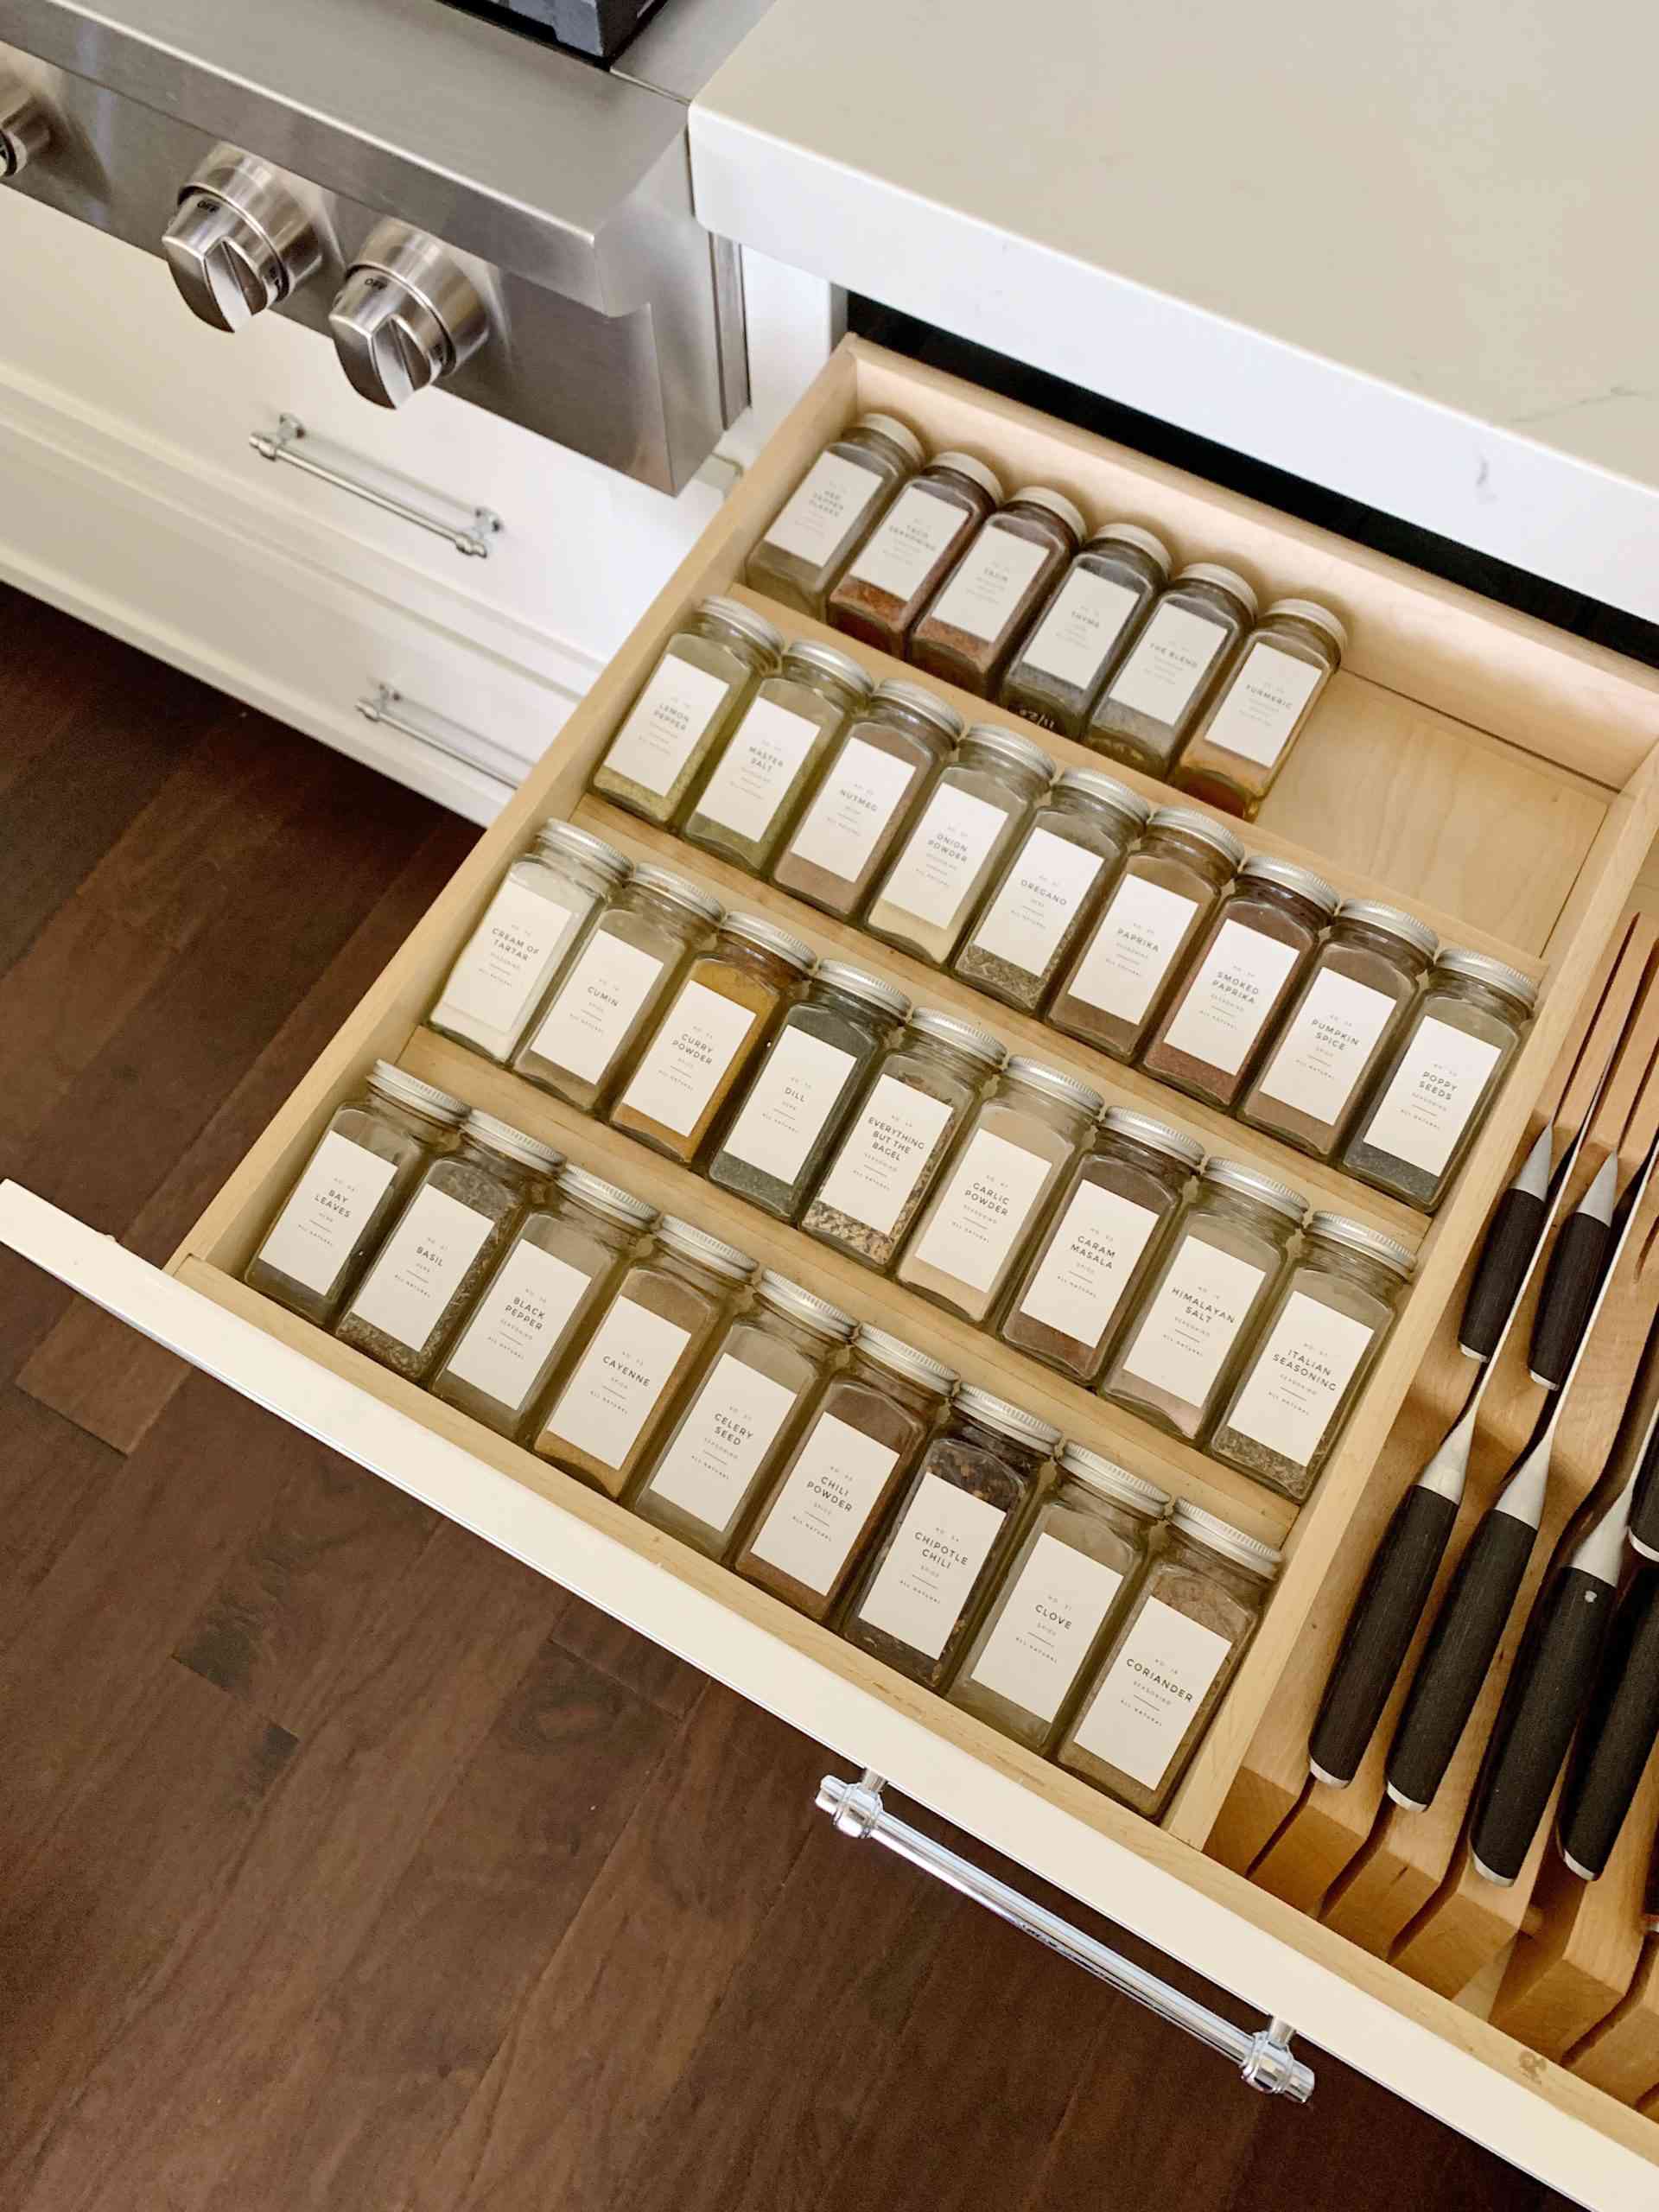 Chọn một ngăn kéo tủ dưới để sắp xếp các lọ gia vị gọn gàng, thêm một ngăn lưu trữ bộ dao làm bếp an toàn nữa!